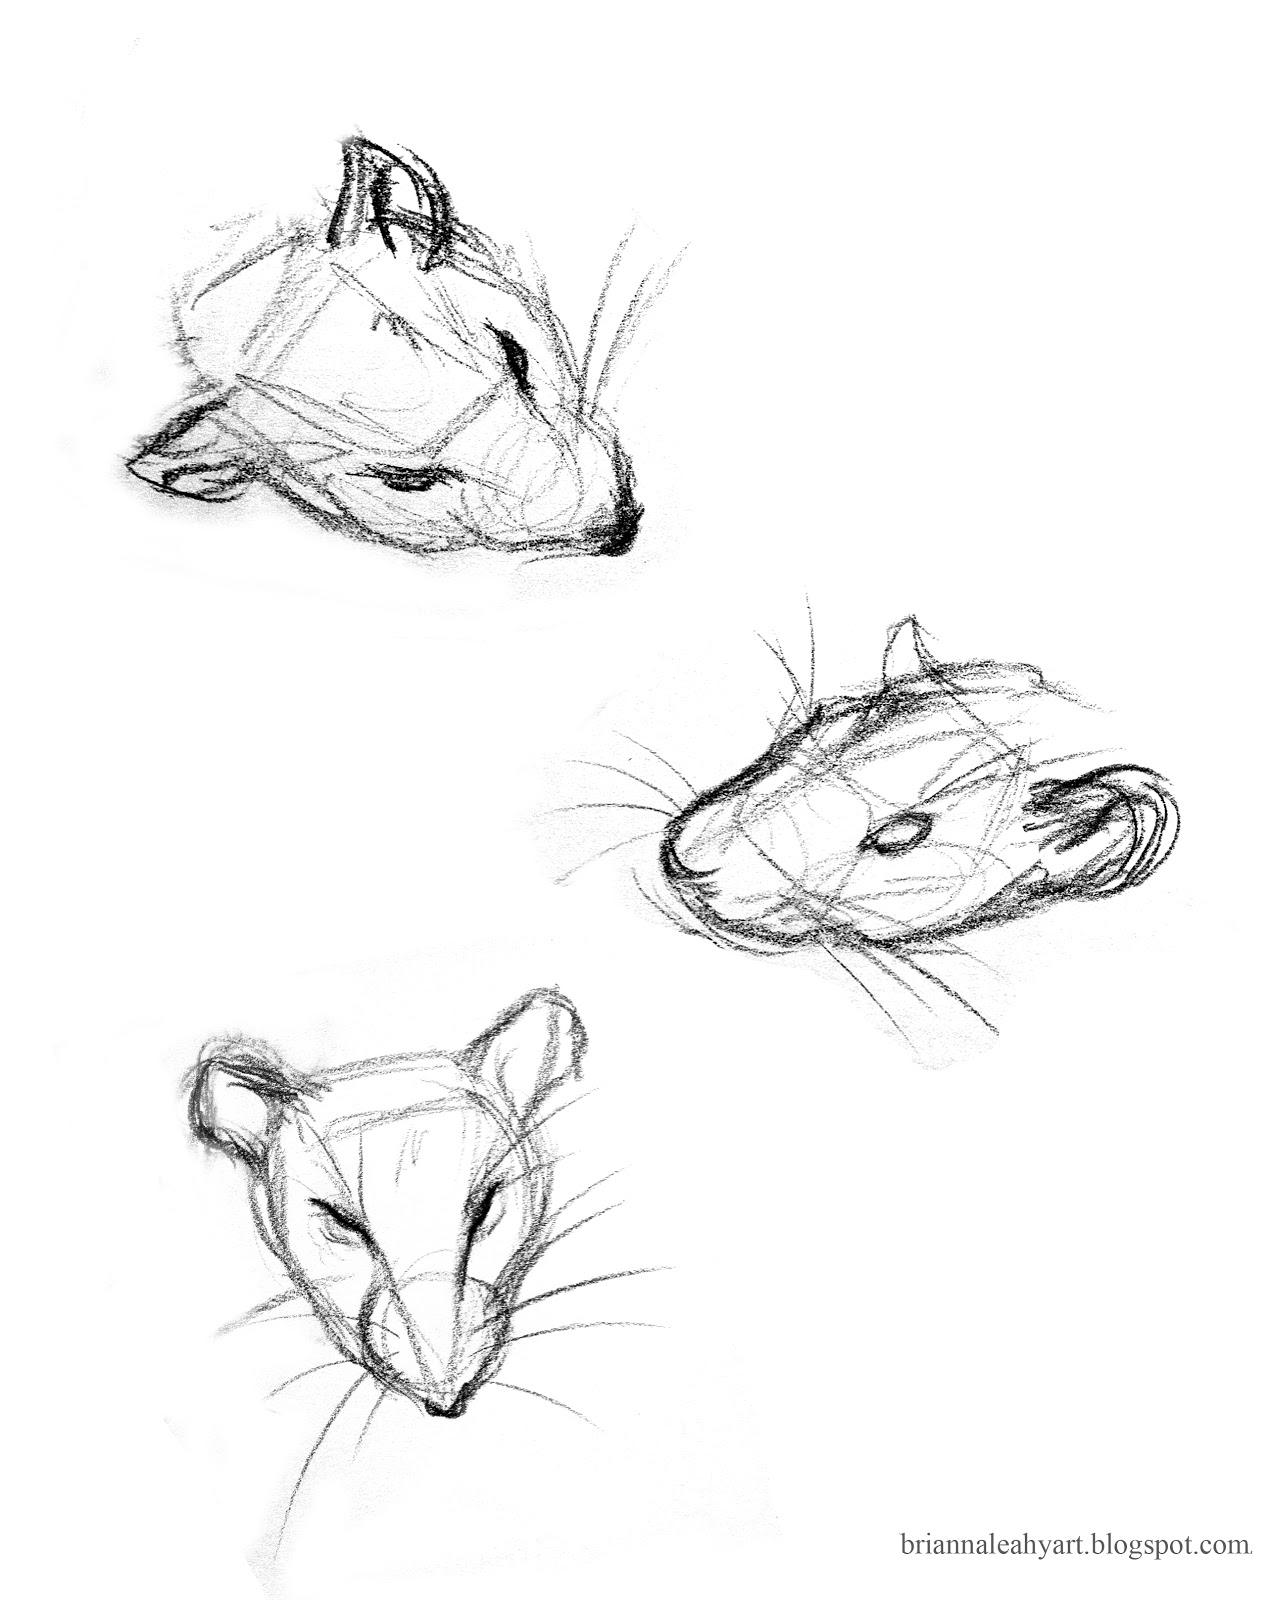 Brianna Leahy Art Sketches Bernard the Rat